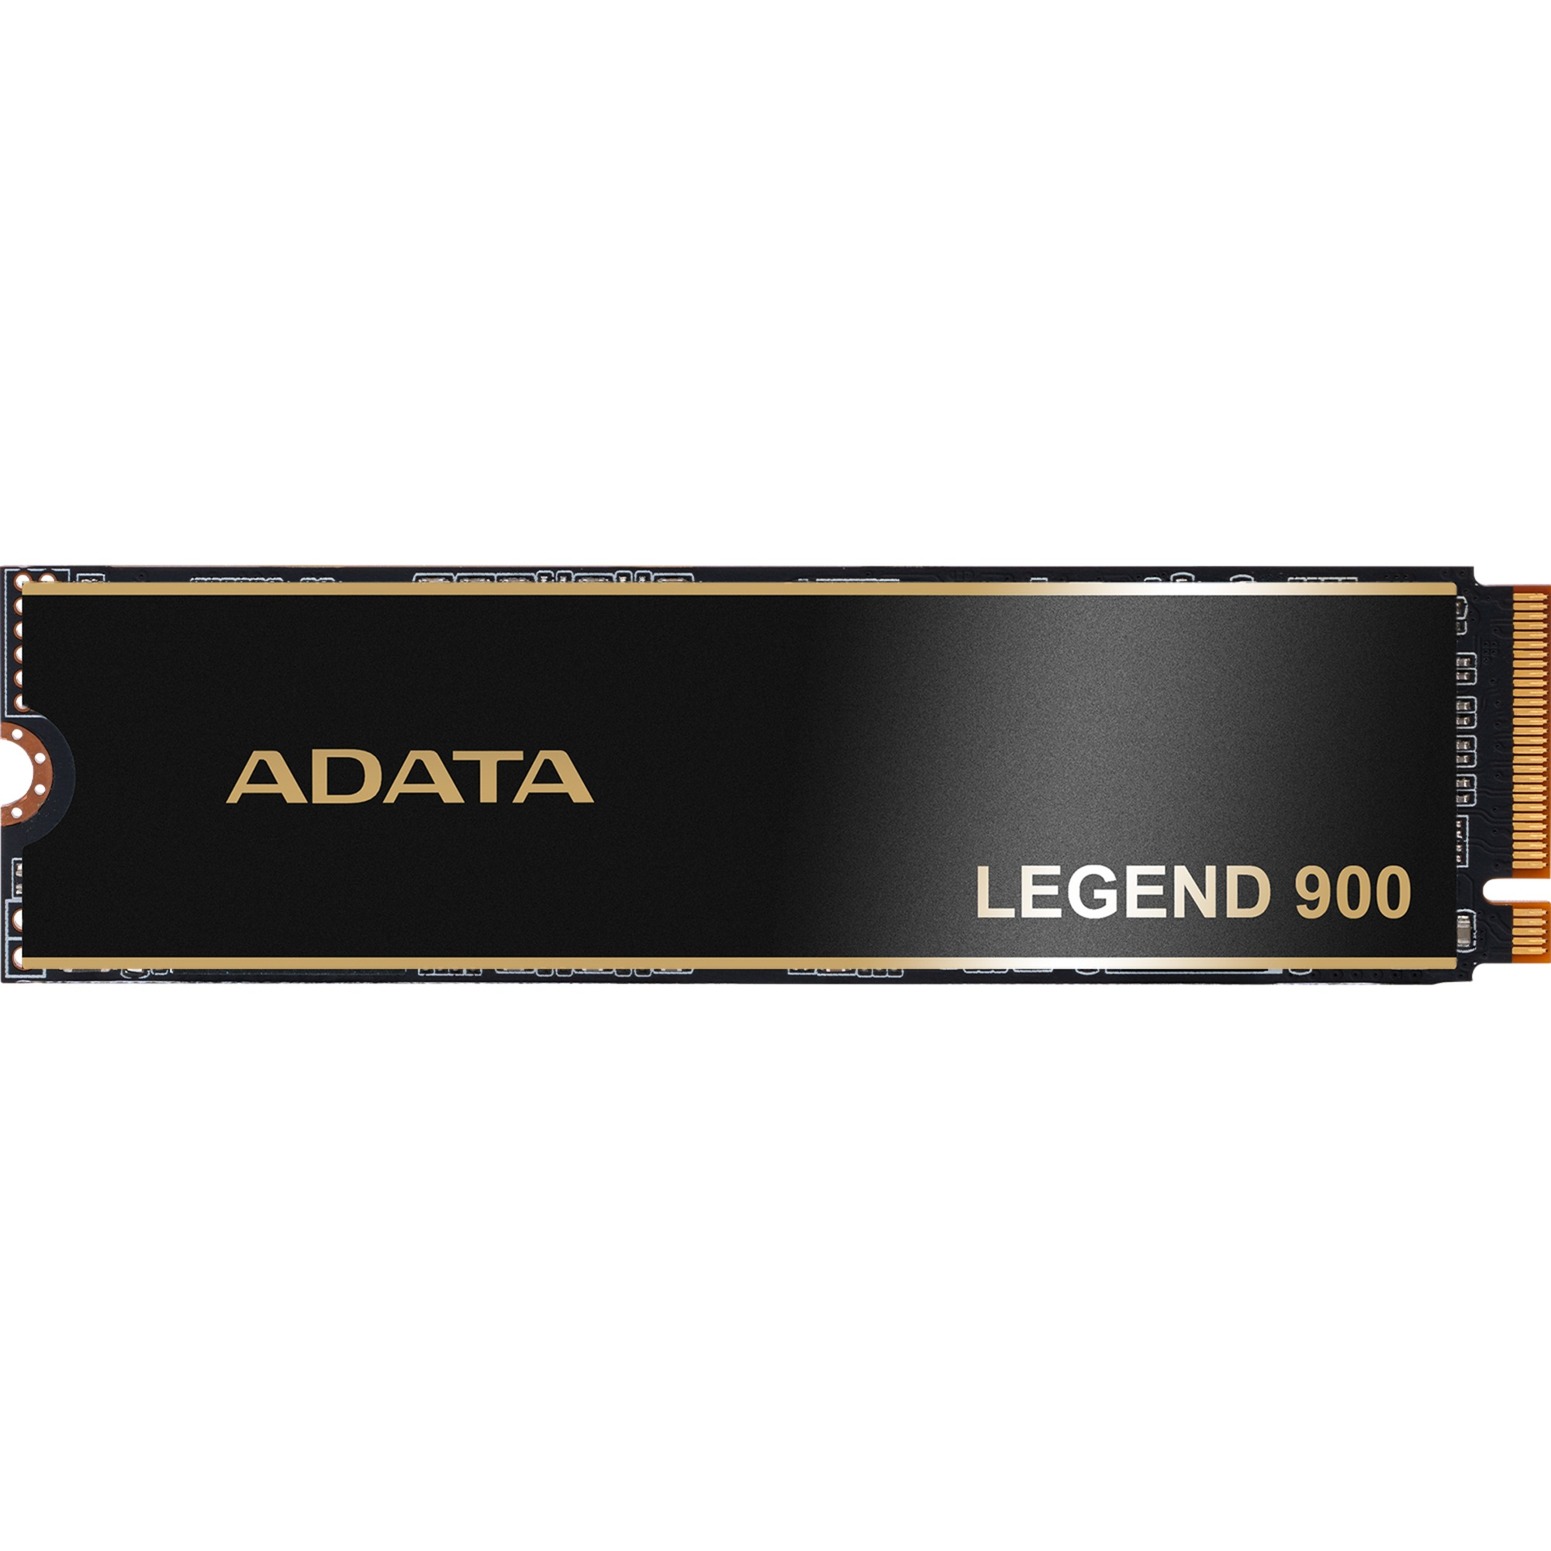 LEGEND 900 512 GB, SSD von ADATA